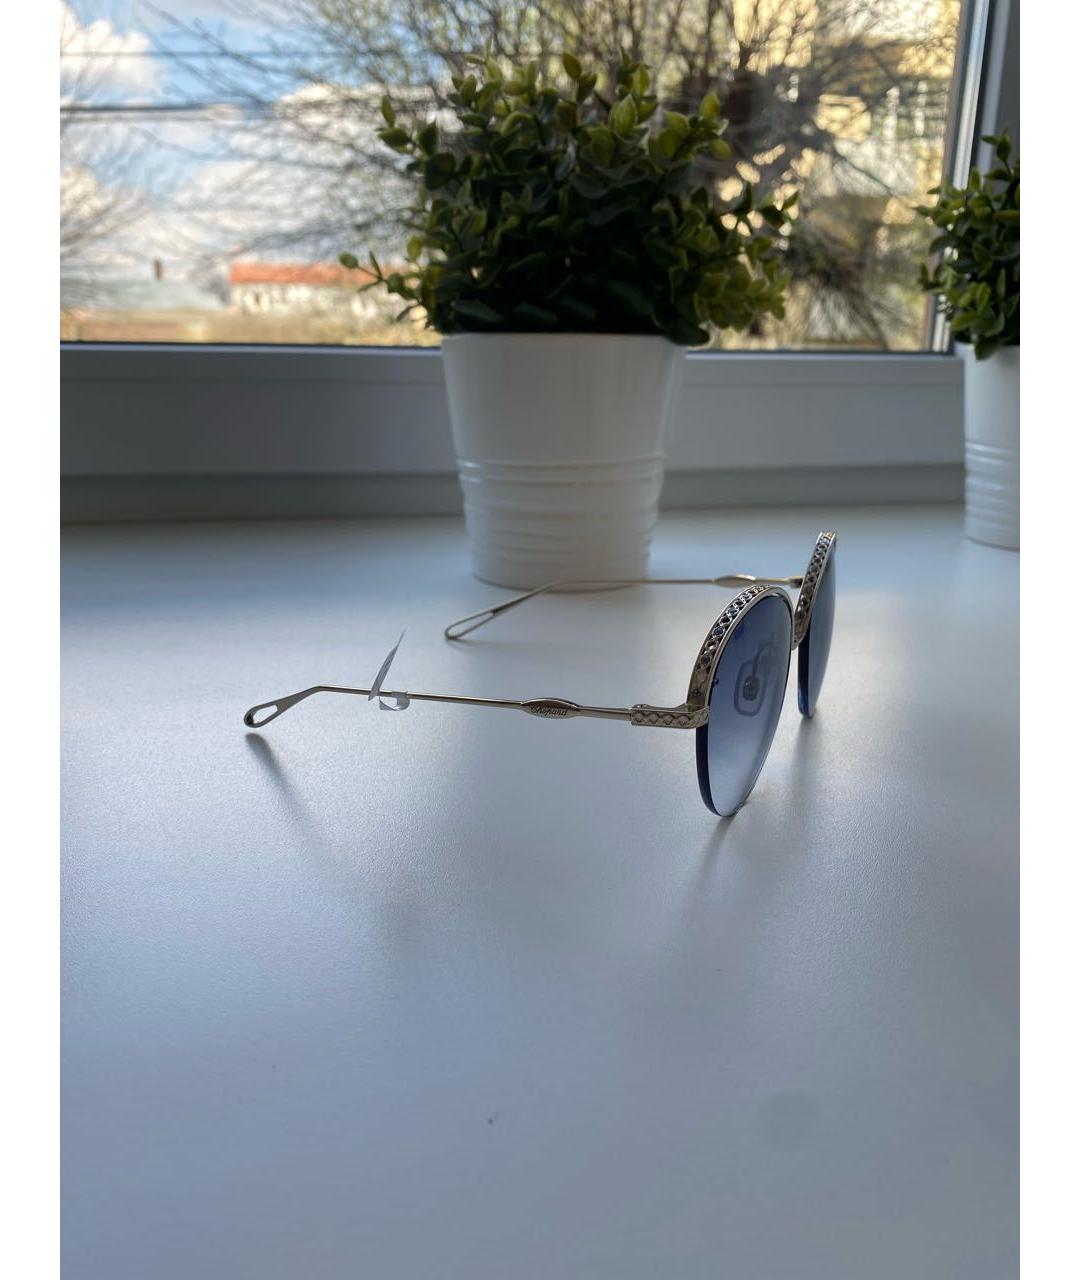 CHOPARD Серебряные металлические солнцезащитные очки, фото 2